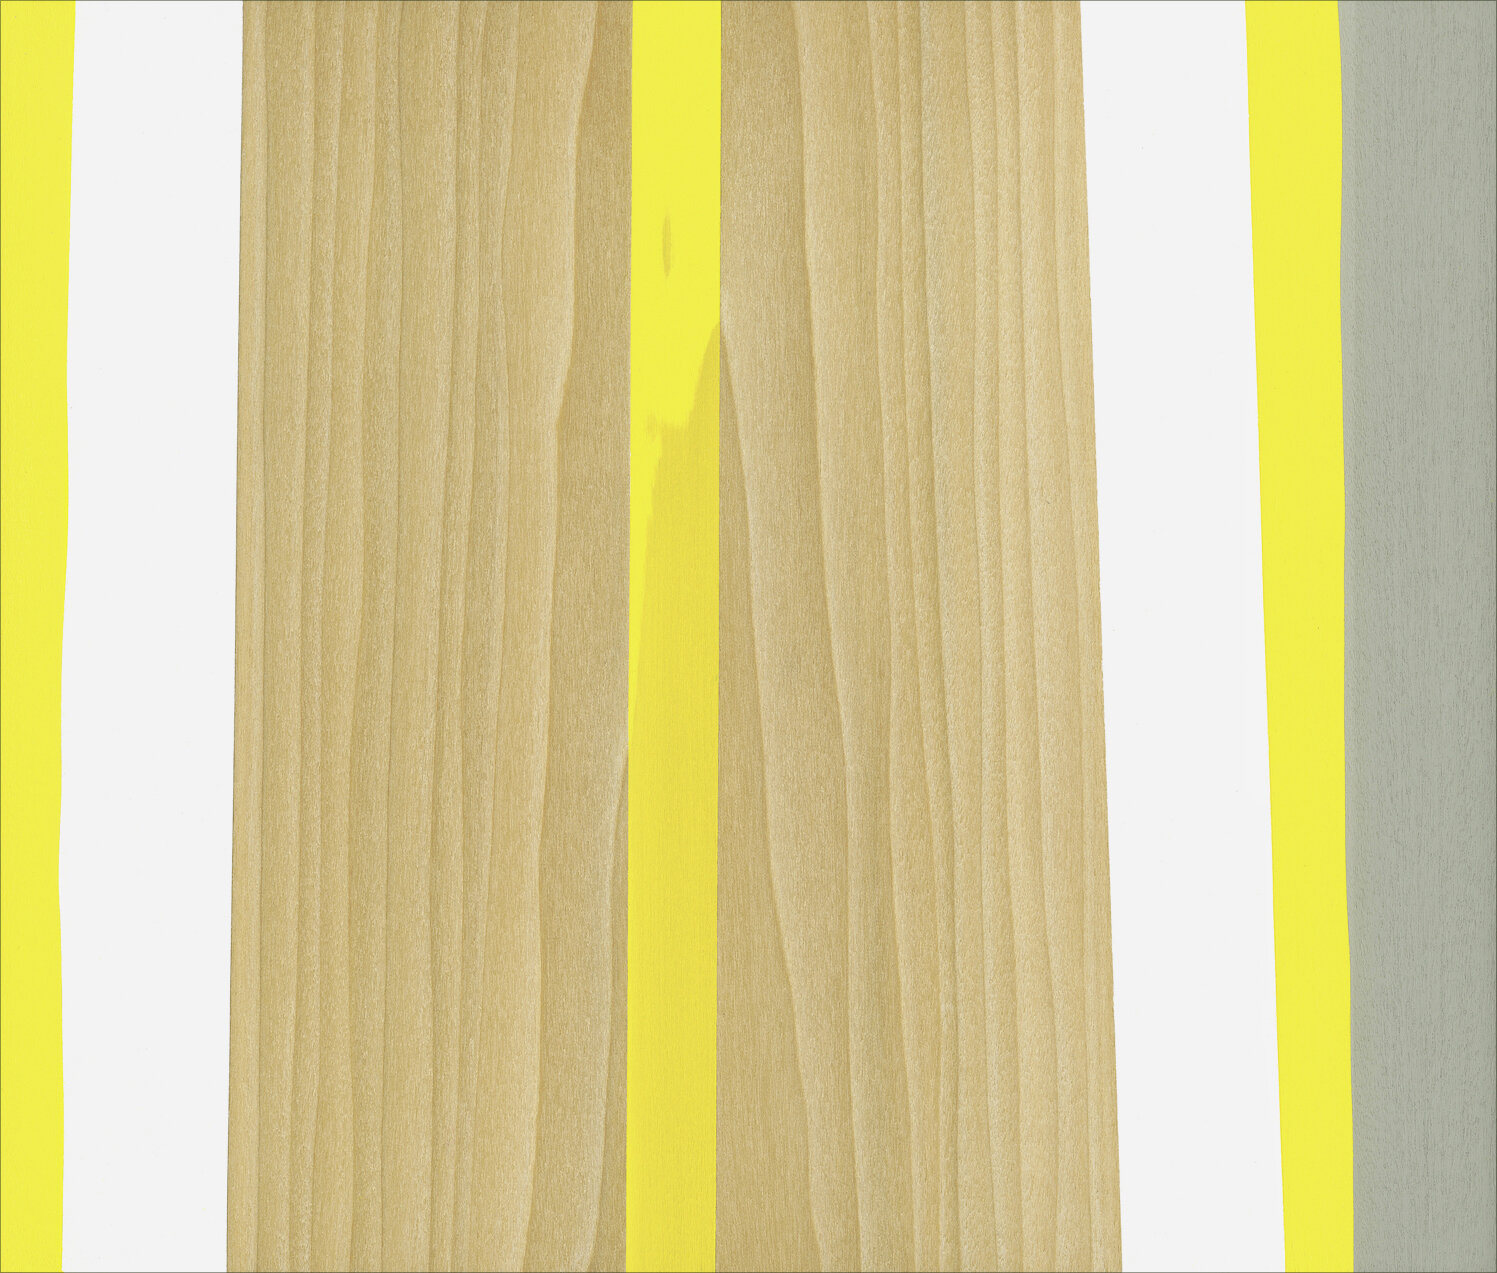   Praise #7  Gouache/Gesso/Colored Pencil/Wood 9 ⅜” x 11” x 1” 2020 